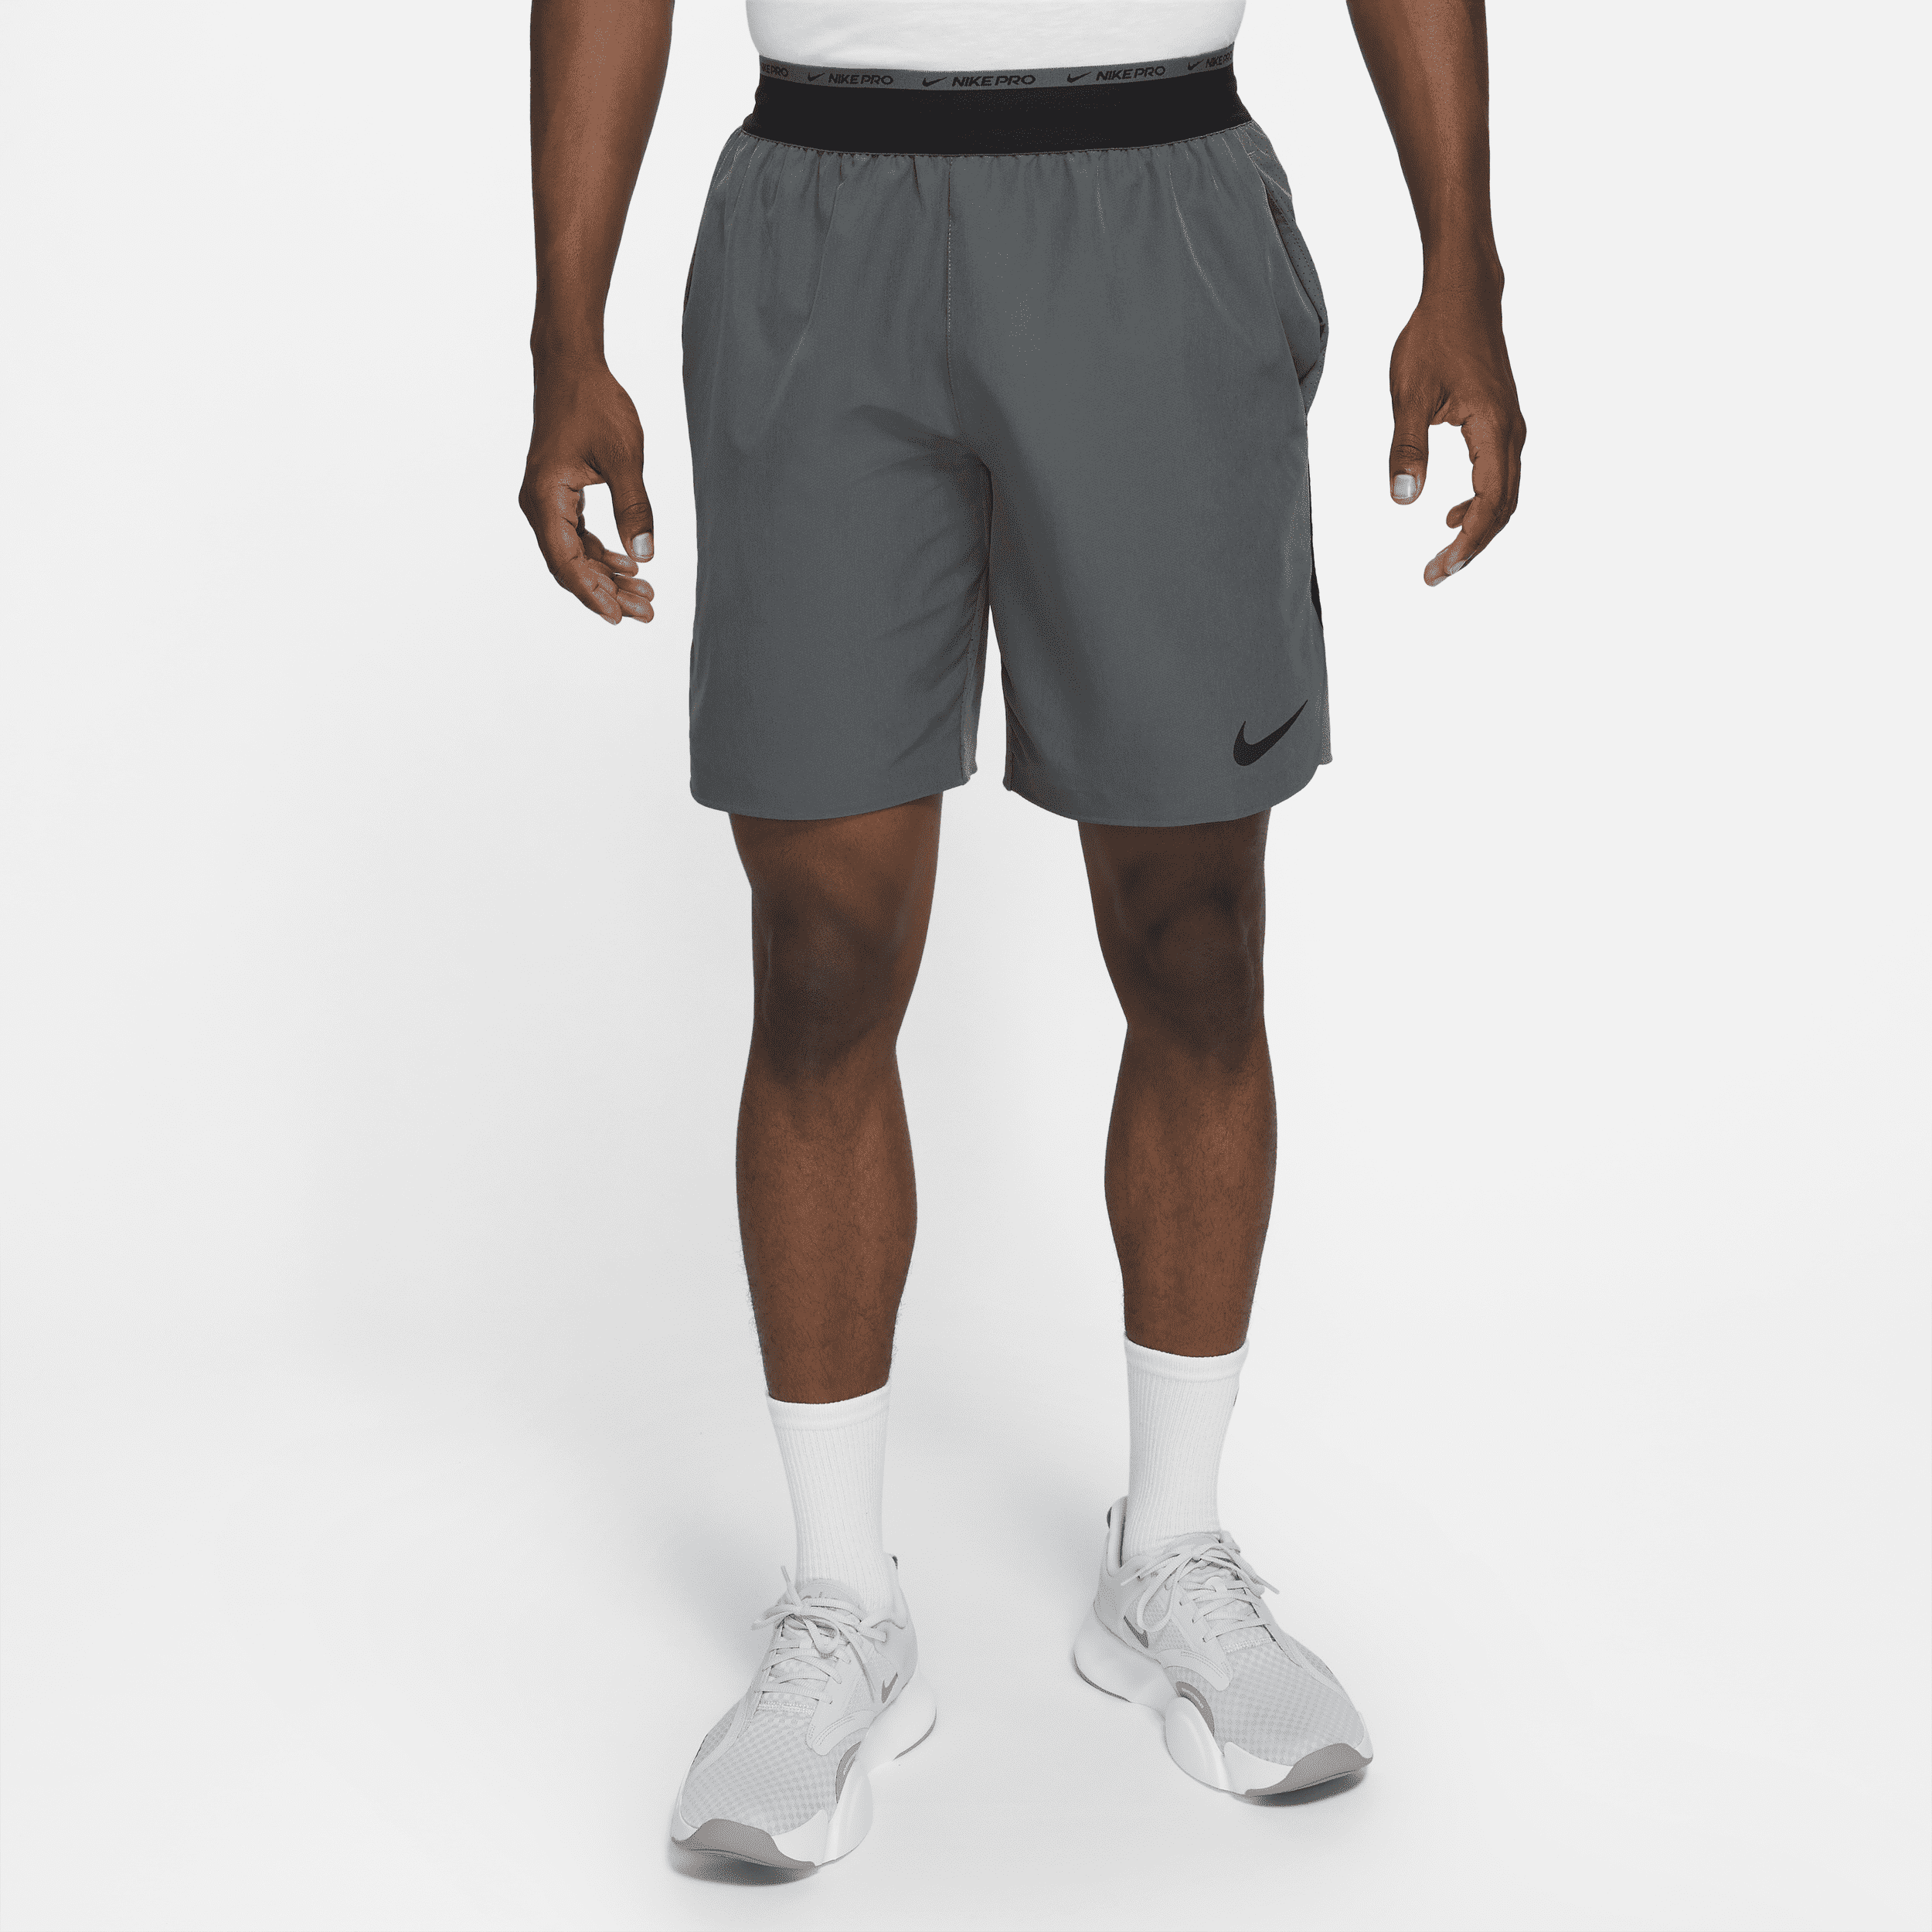 Nike Dri-FIT Flex Rep Pro Collection Pantalón corto de entrenamiento sin forro de 20 cm - Hombre - Gris